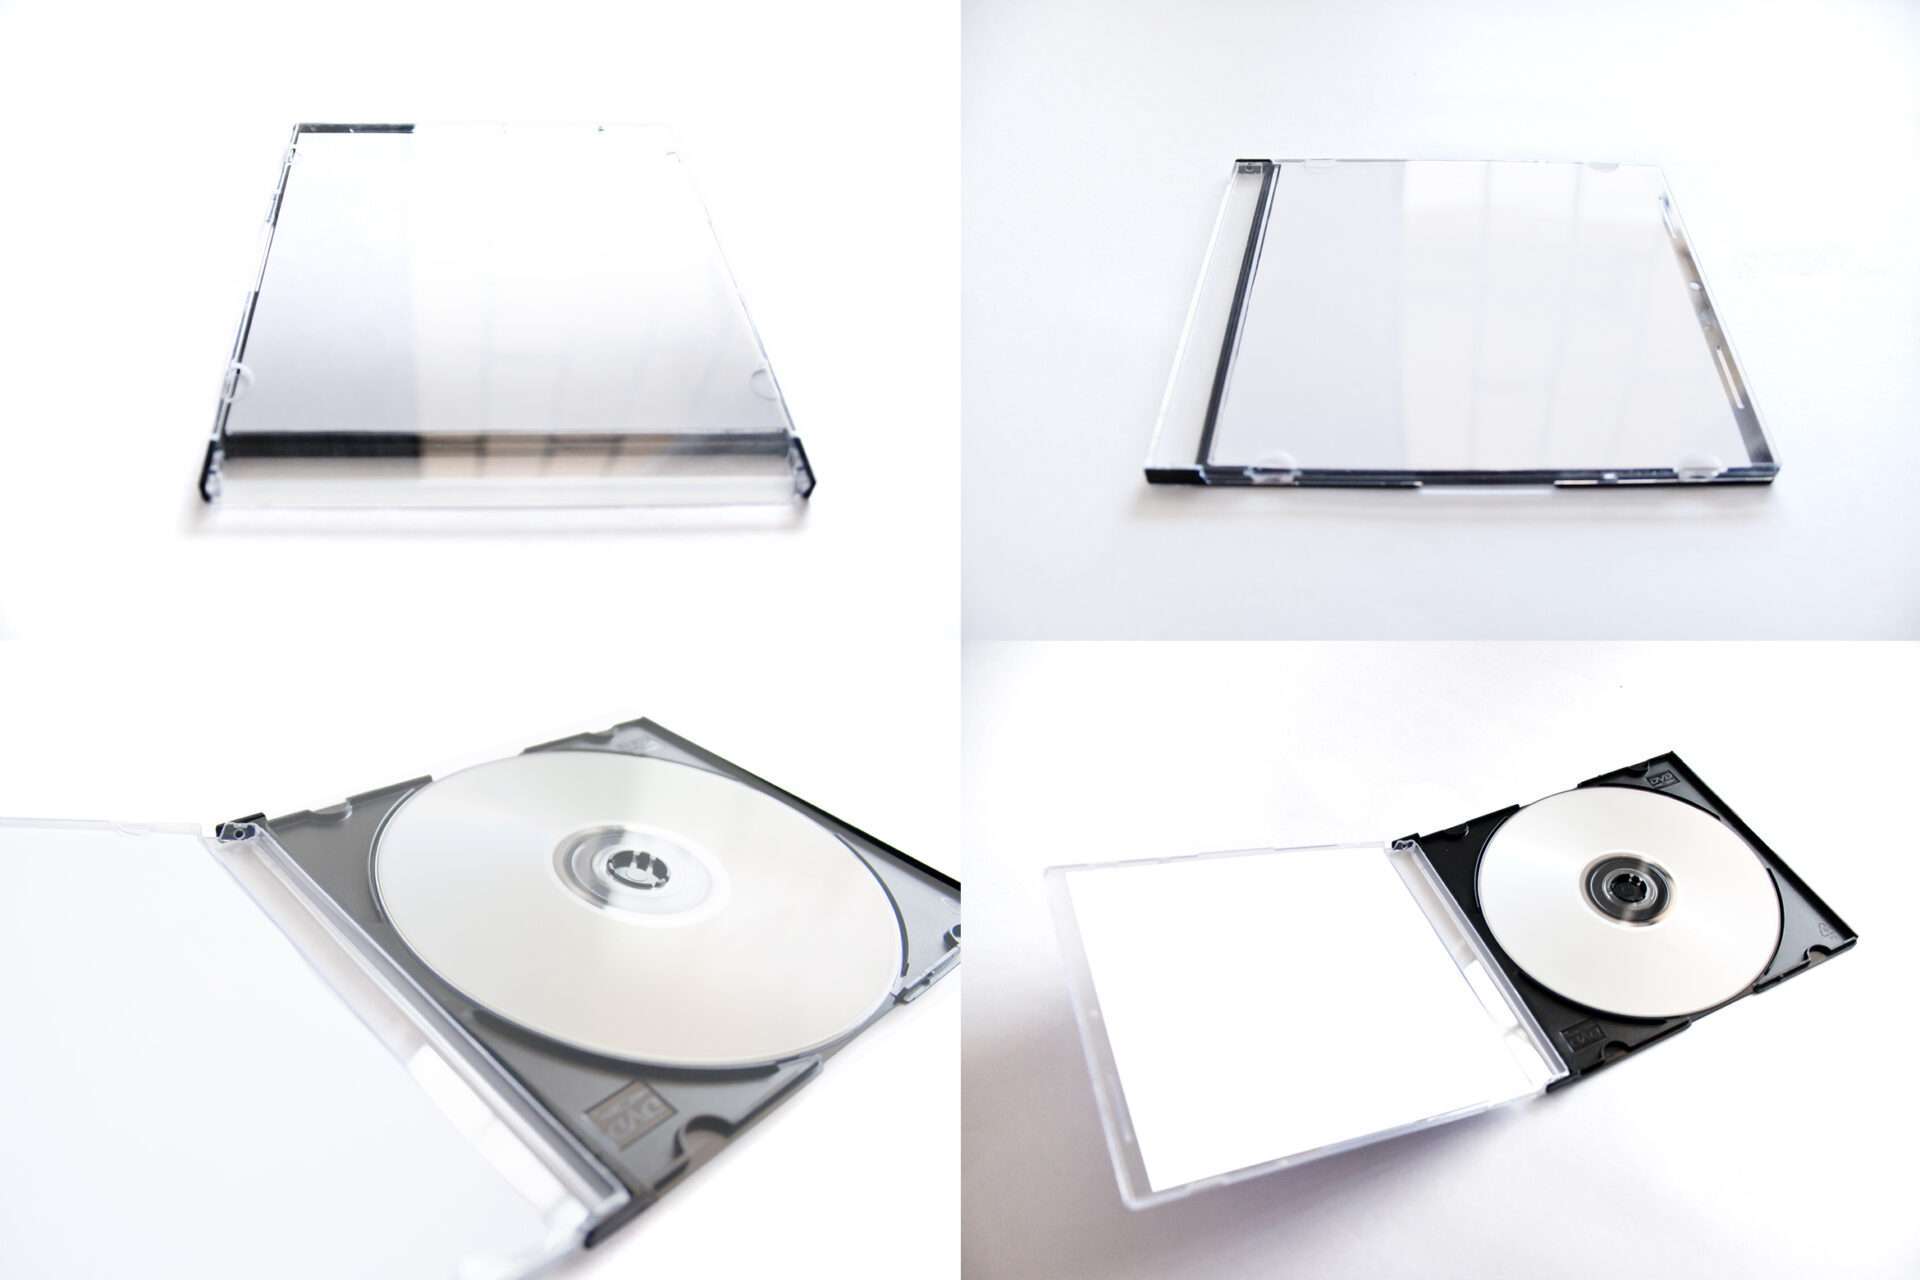 CD-DVD Jewel Case Open Mockup